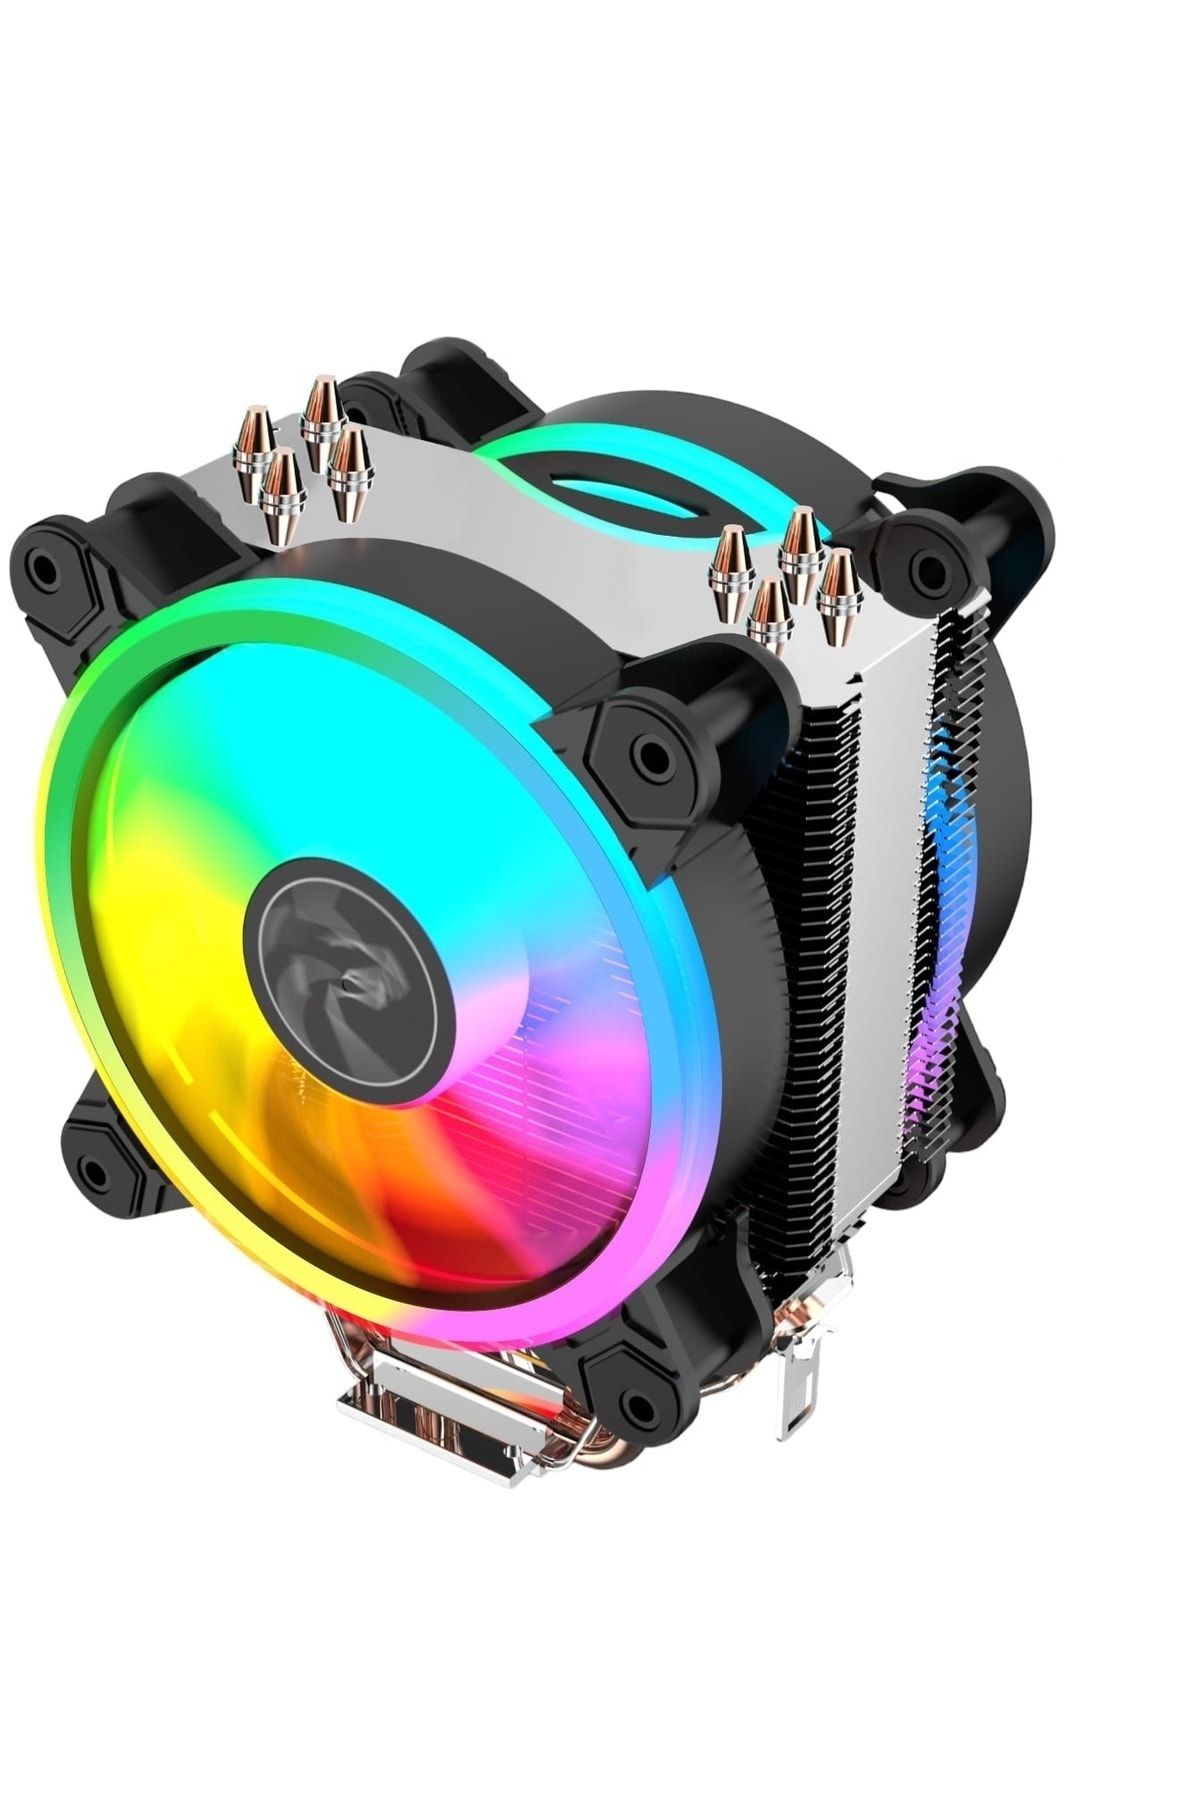 GAMETECH Freezer Hd 2.4 Çift Rainbow Fanlı 4x Bakır Borulu Performans Serisi Kule Tipi Işlemci Fanı